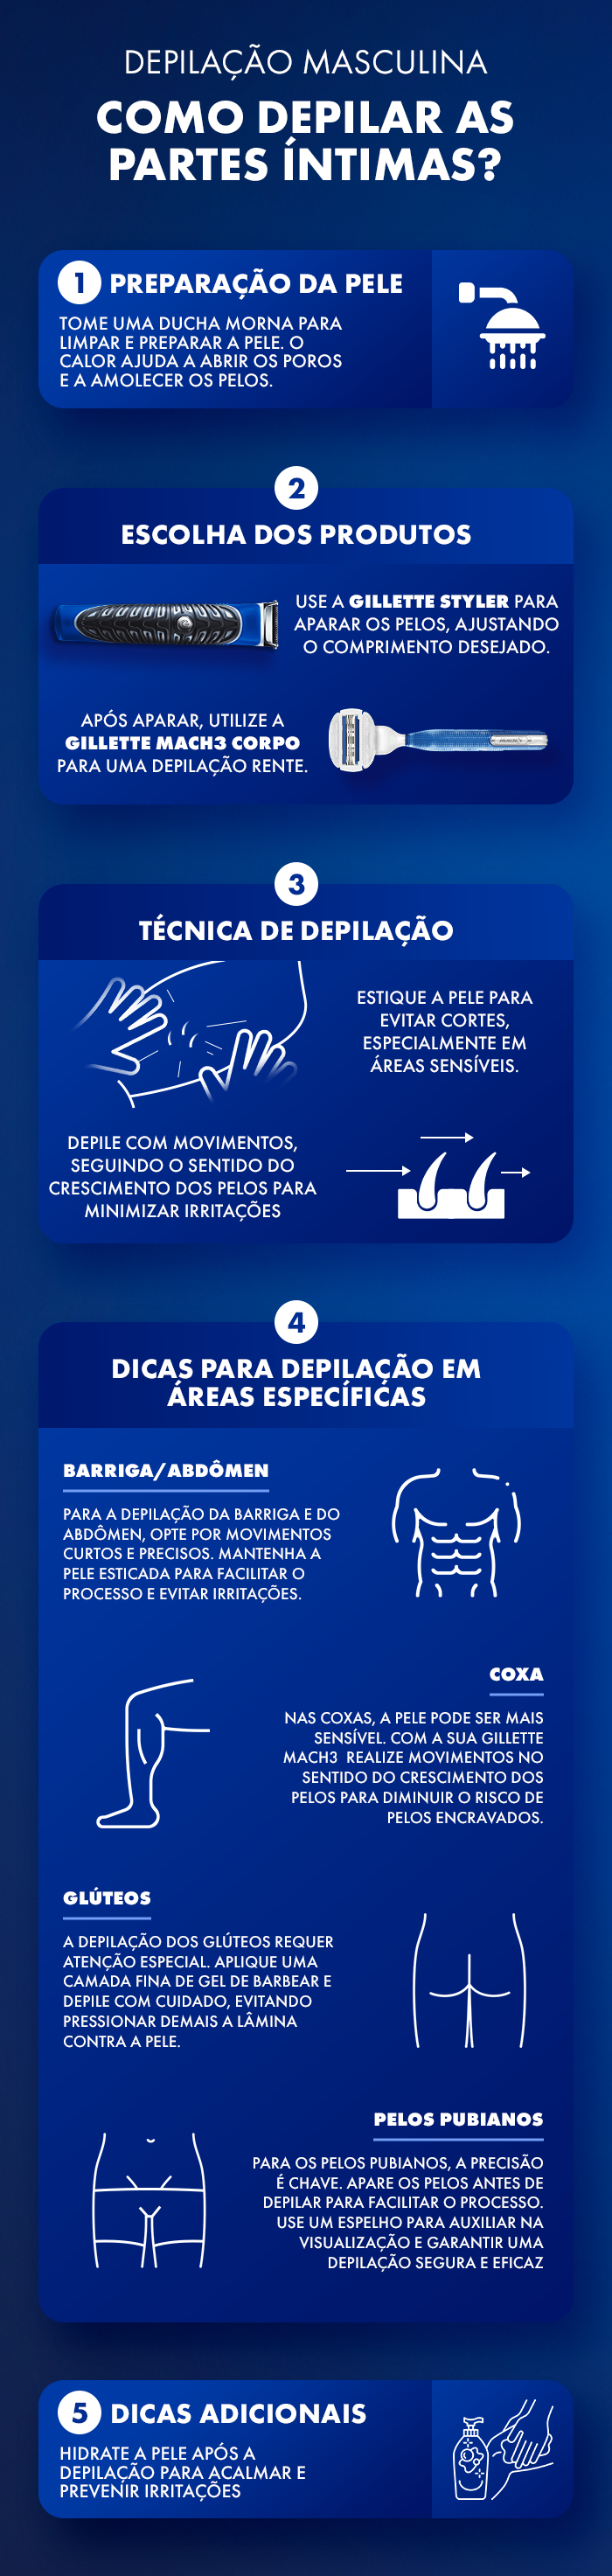 Infográfico produzido pelo blog Mano a Mano com dicas de depilação íntima masculina